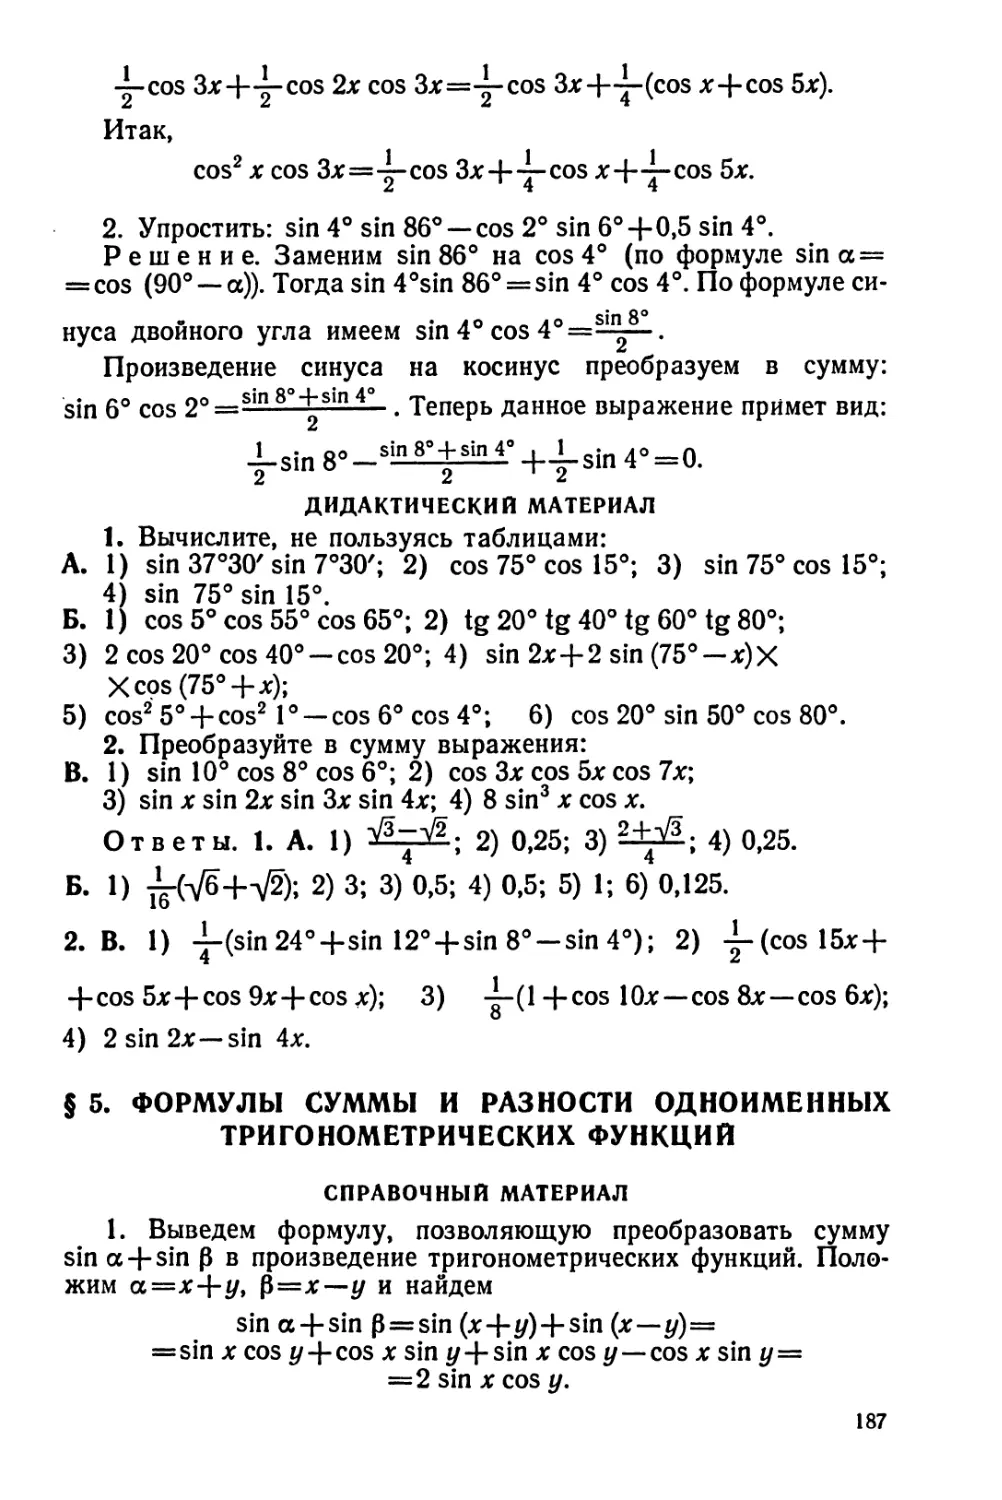 Формулы суммы и разности одноименных тригонометрических функций